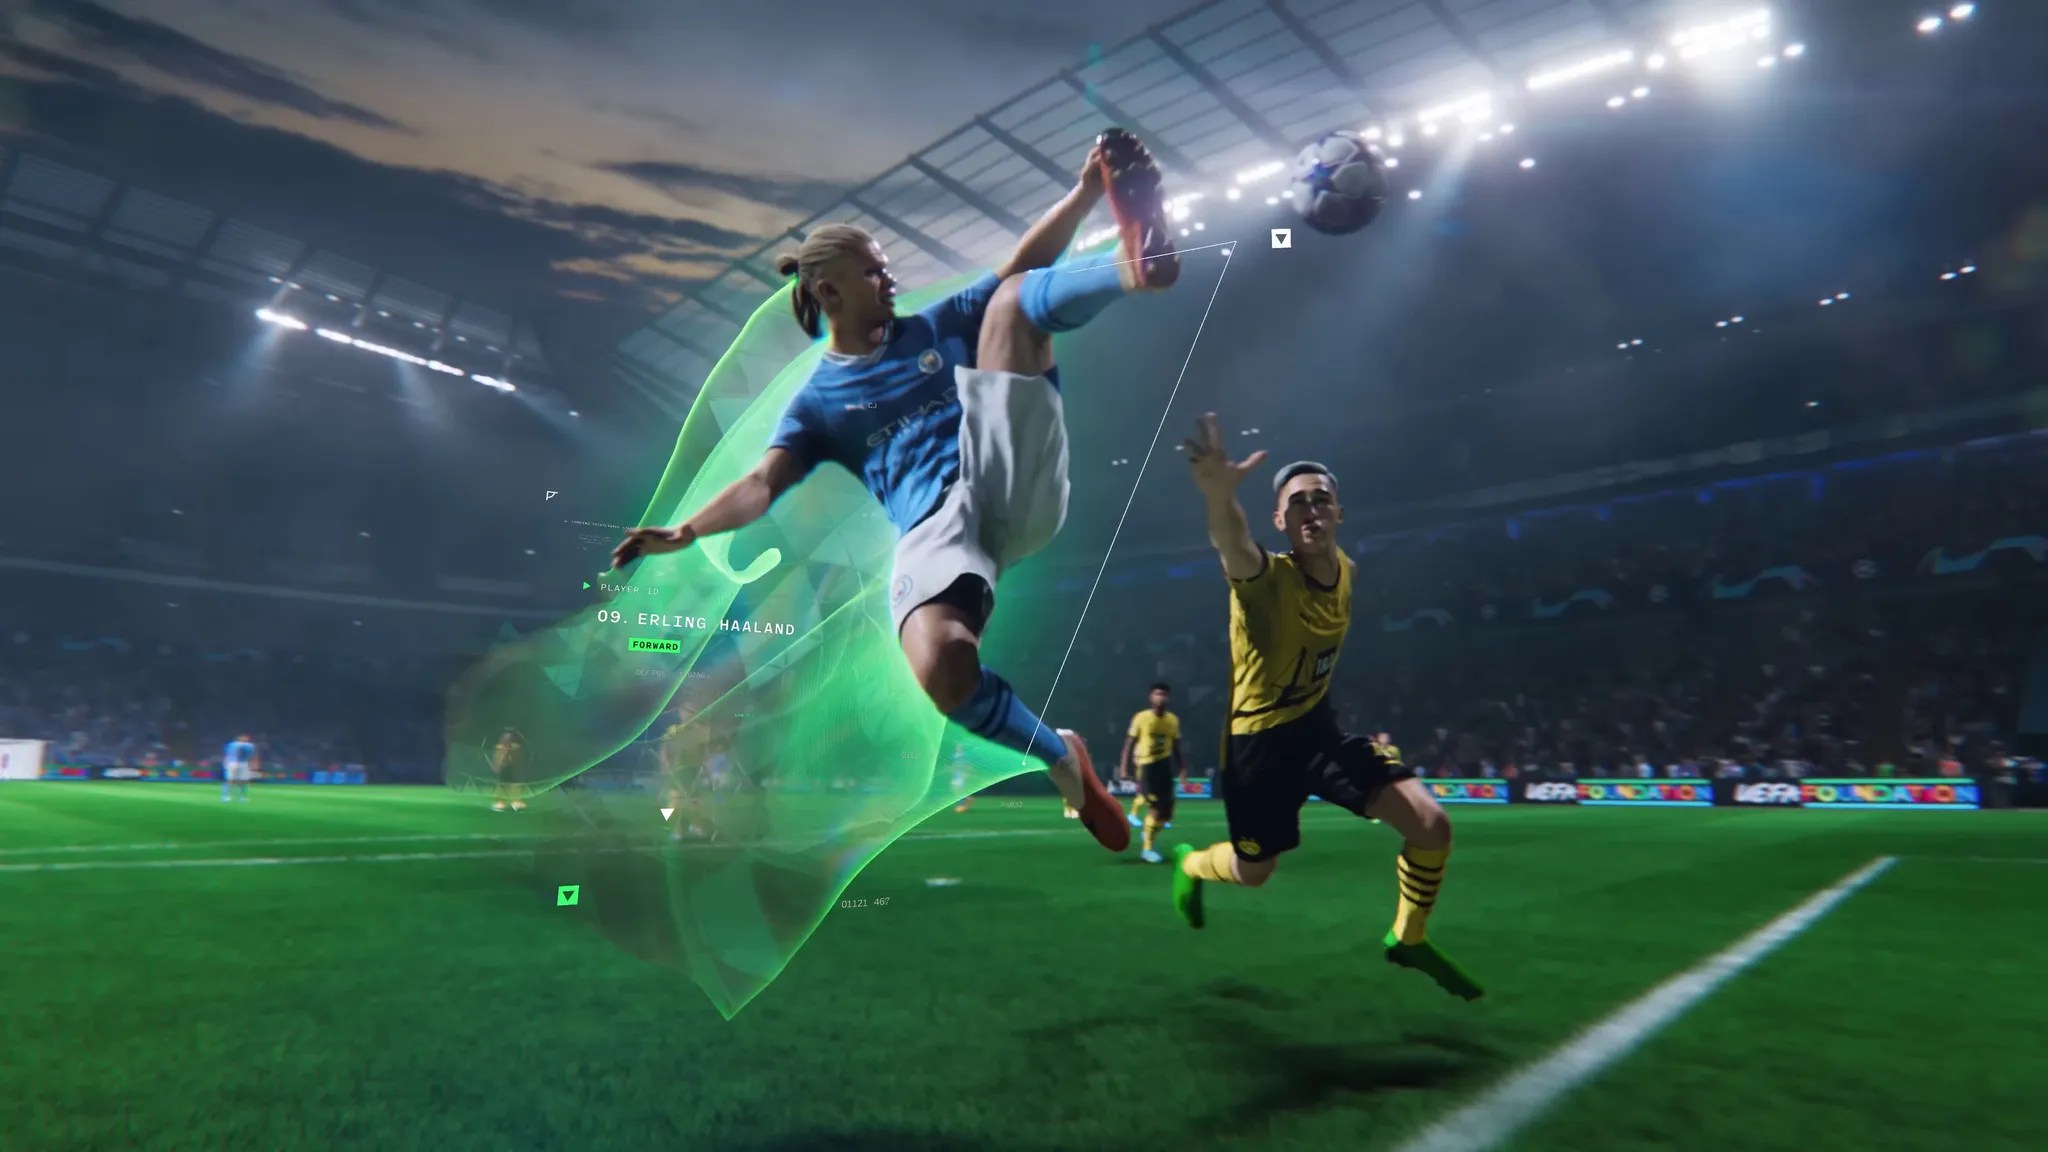 Sonríen los fanáticos de los videojuegos de fútbol: EA Sports FC